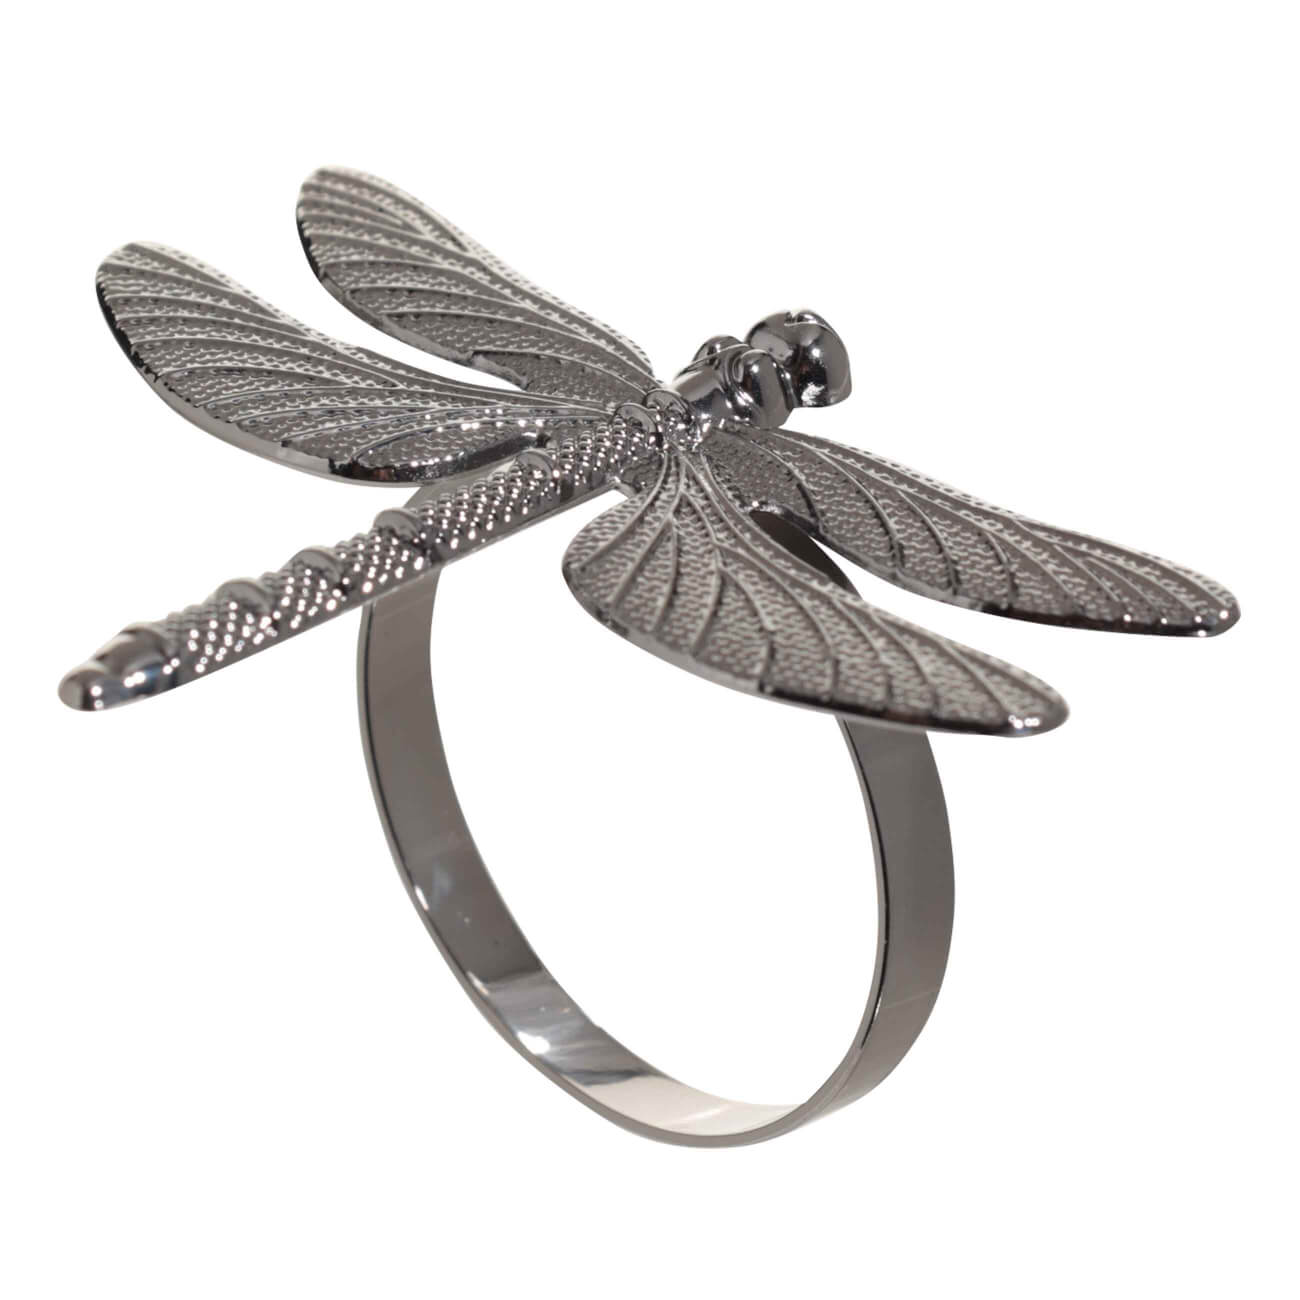 Кольцо для салфеток, 7 см, металл, черное, Стрекоза, Dragonfly кольцо для карниза d 35 38 мм 10 шт серебряный